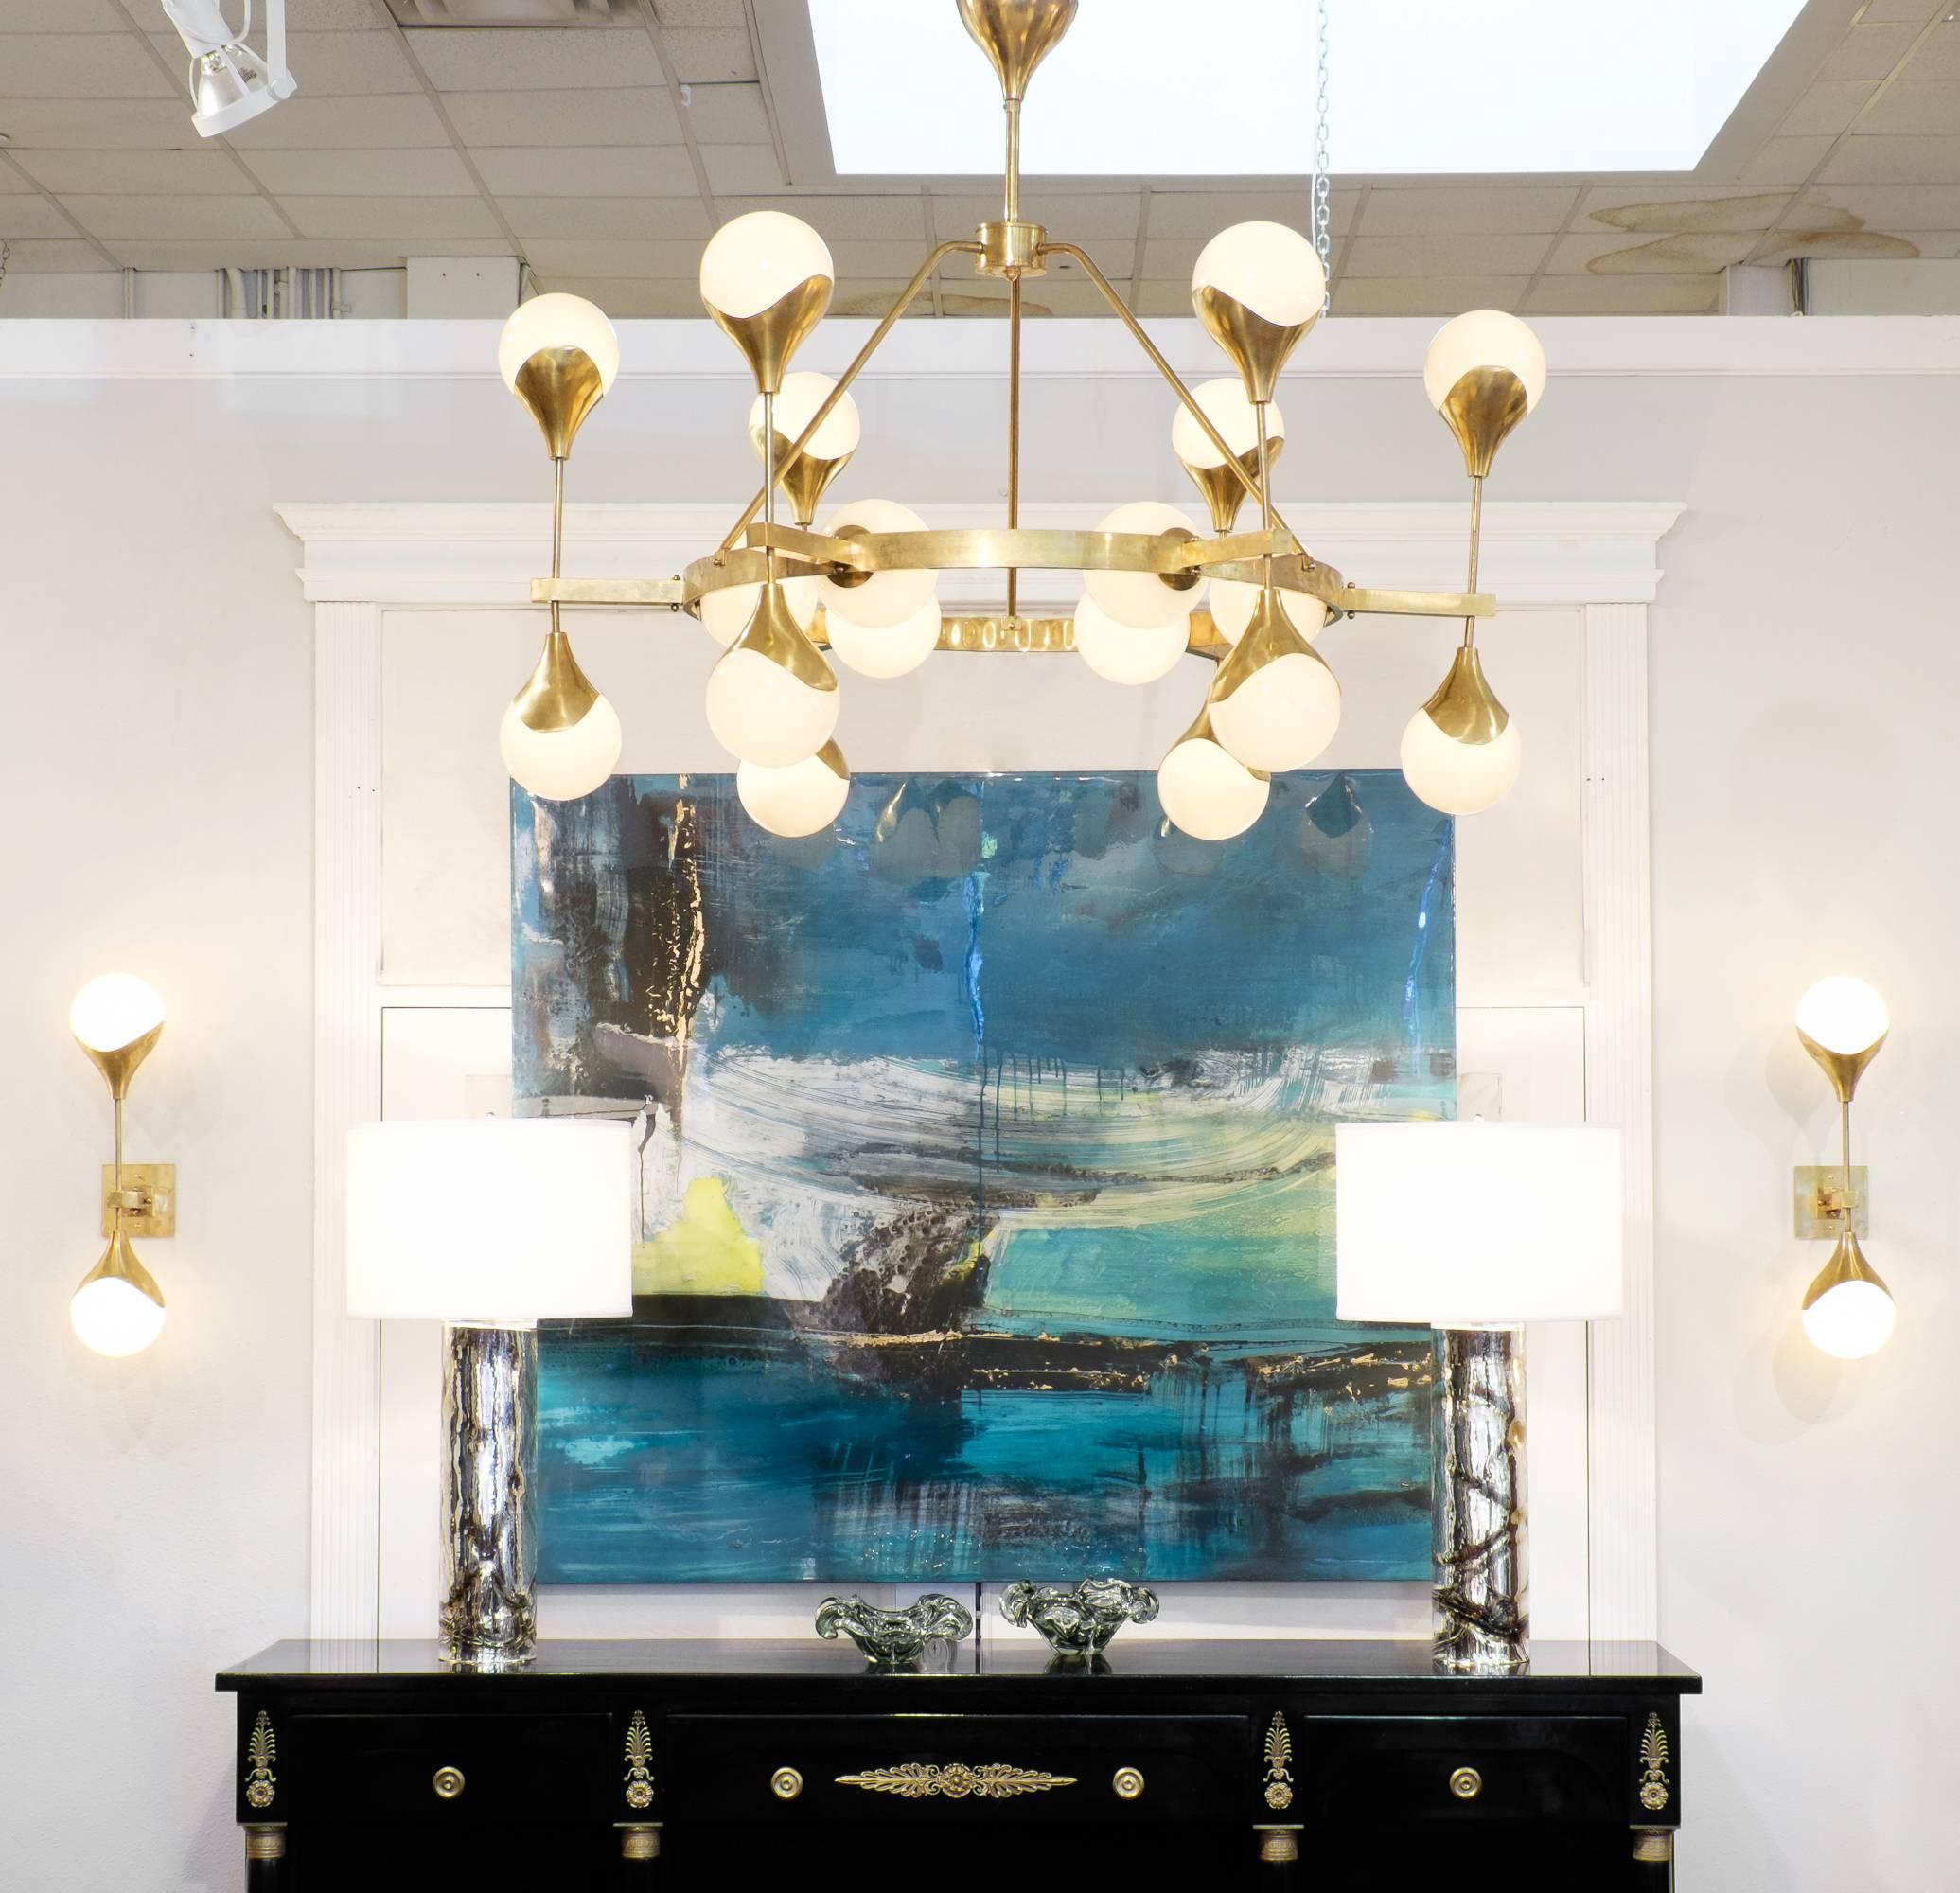 Un lustre époustouflant et brillant en verre globe de Murano et laiton texturé. Cette pièce lumineuse contient dix-huit ampoules globe brillantes à culot candélabre et est recâblée pour le marché américain.

Cette pièce se trouve actuellement dans